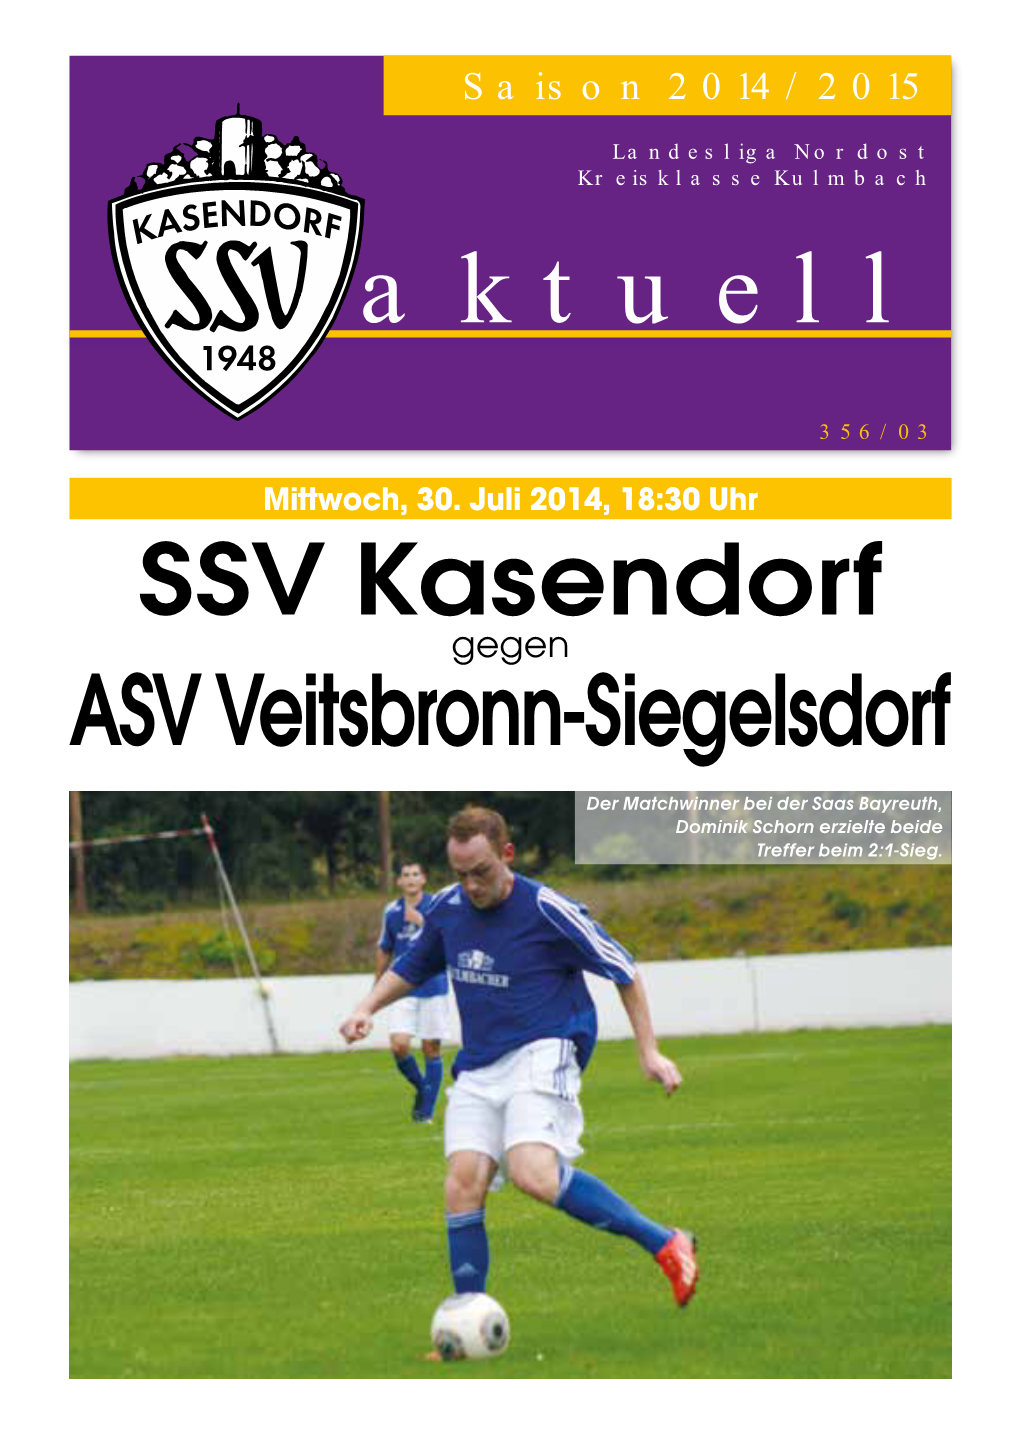 SSV Kasendorf ASV Veitsbronn-Siegelsdorf